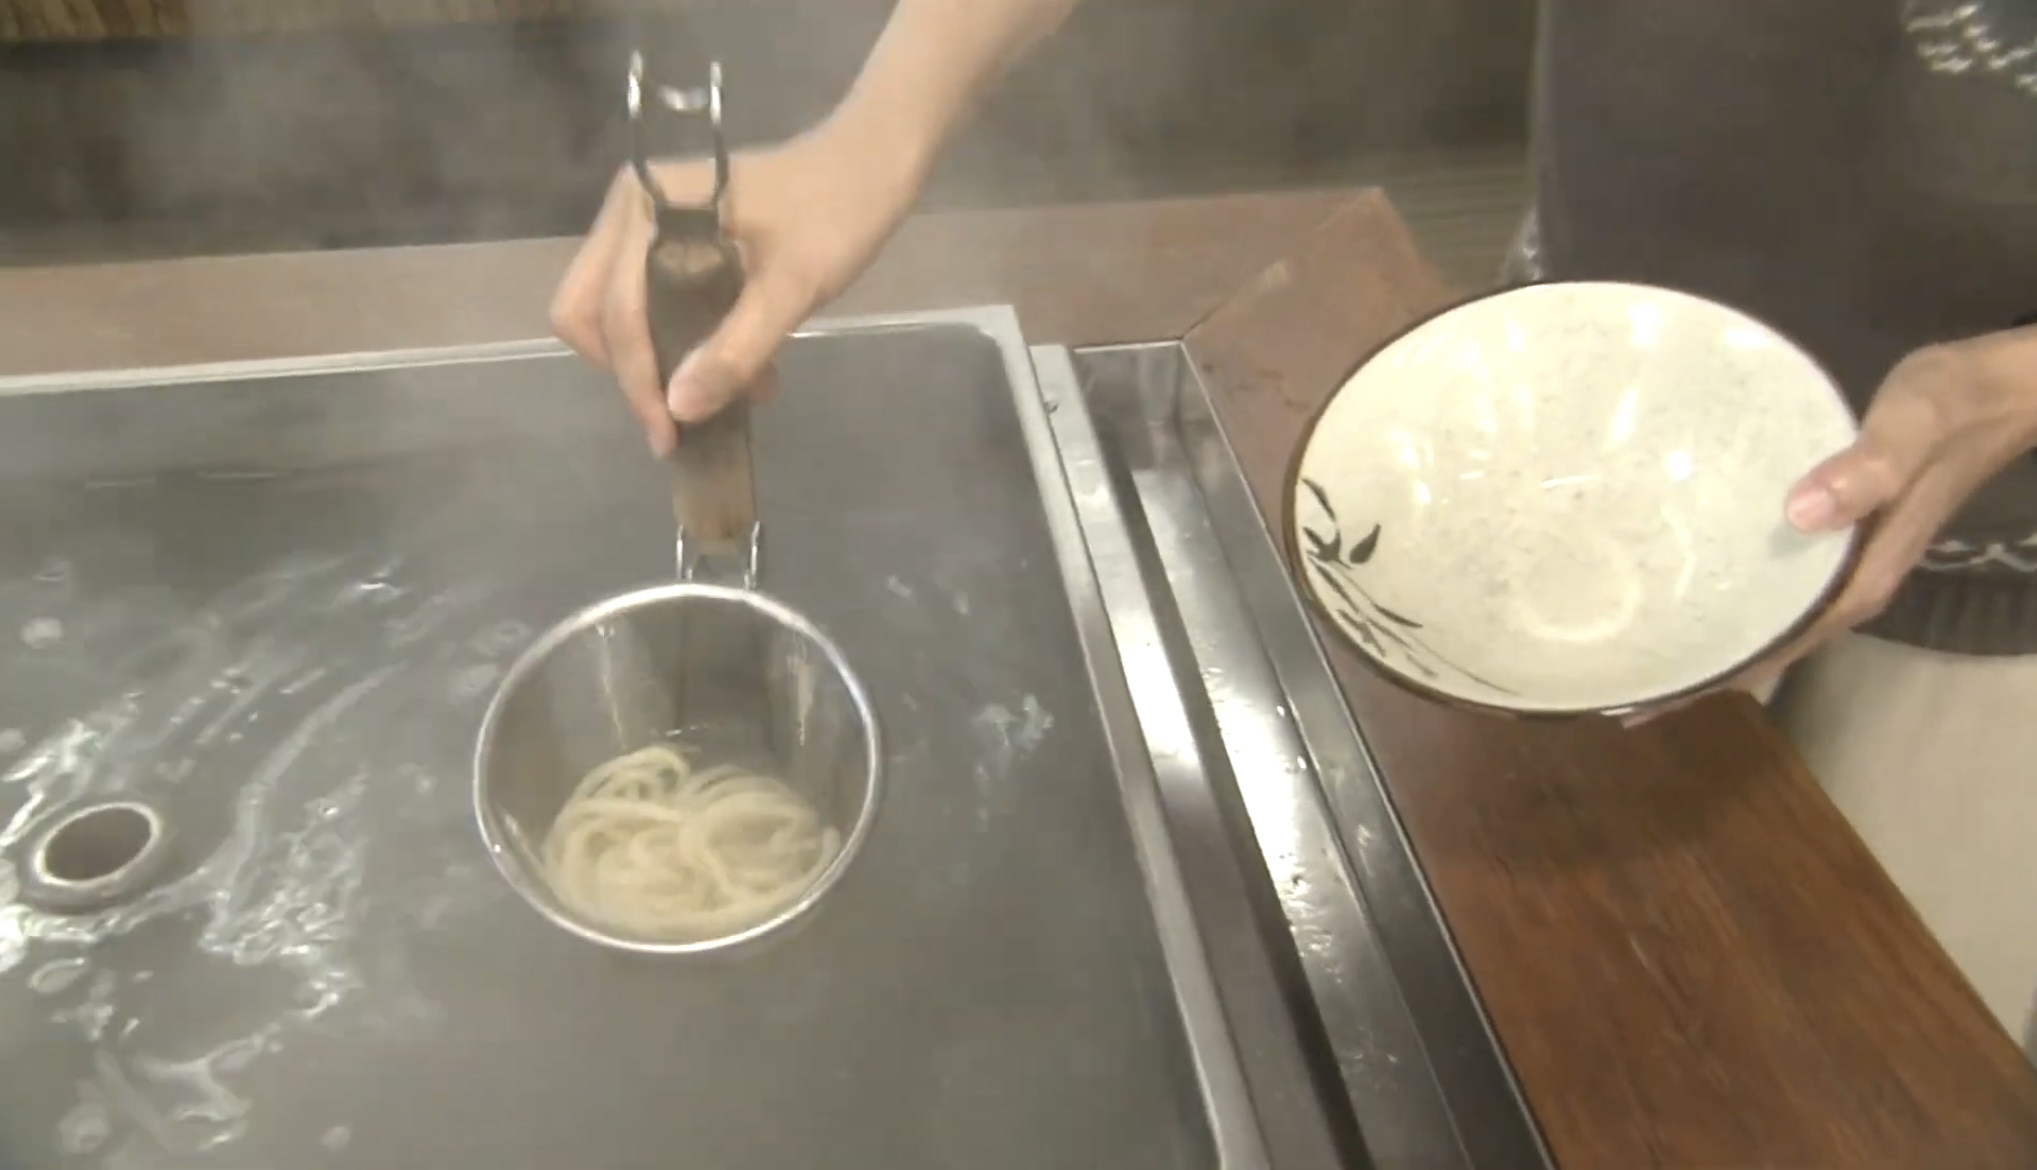 Meigen Udon - boiling the noodles